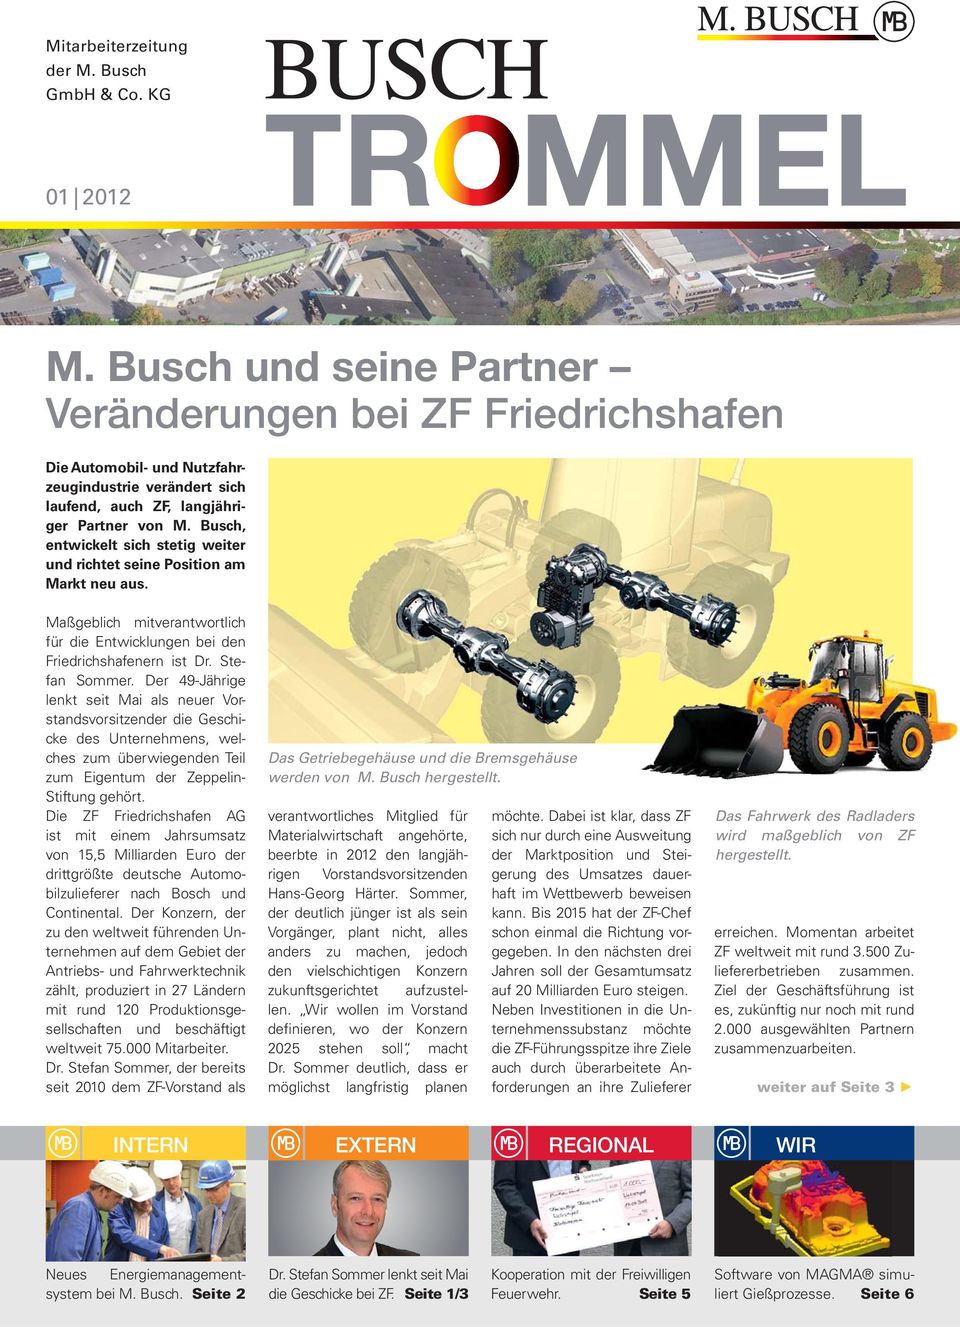 Busch, entwickelt sich stetig weiter und richtet seine Position am Markt neu aus. Maßgeblich mitverantwortlich für die Entwicklungen bei den Friedrichshafenern ist Dr. Stefan Sommer.